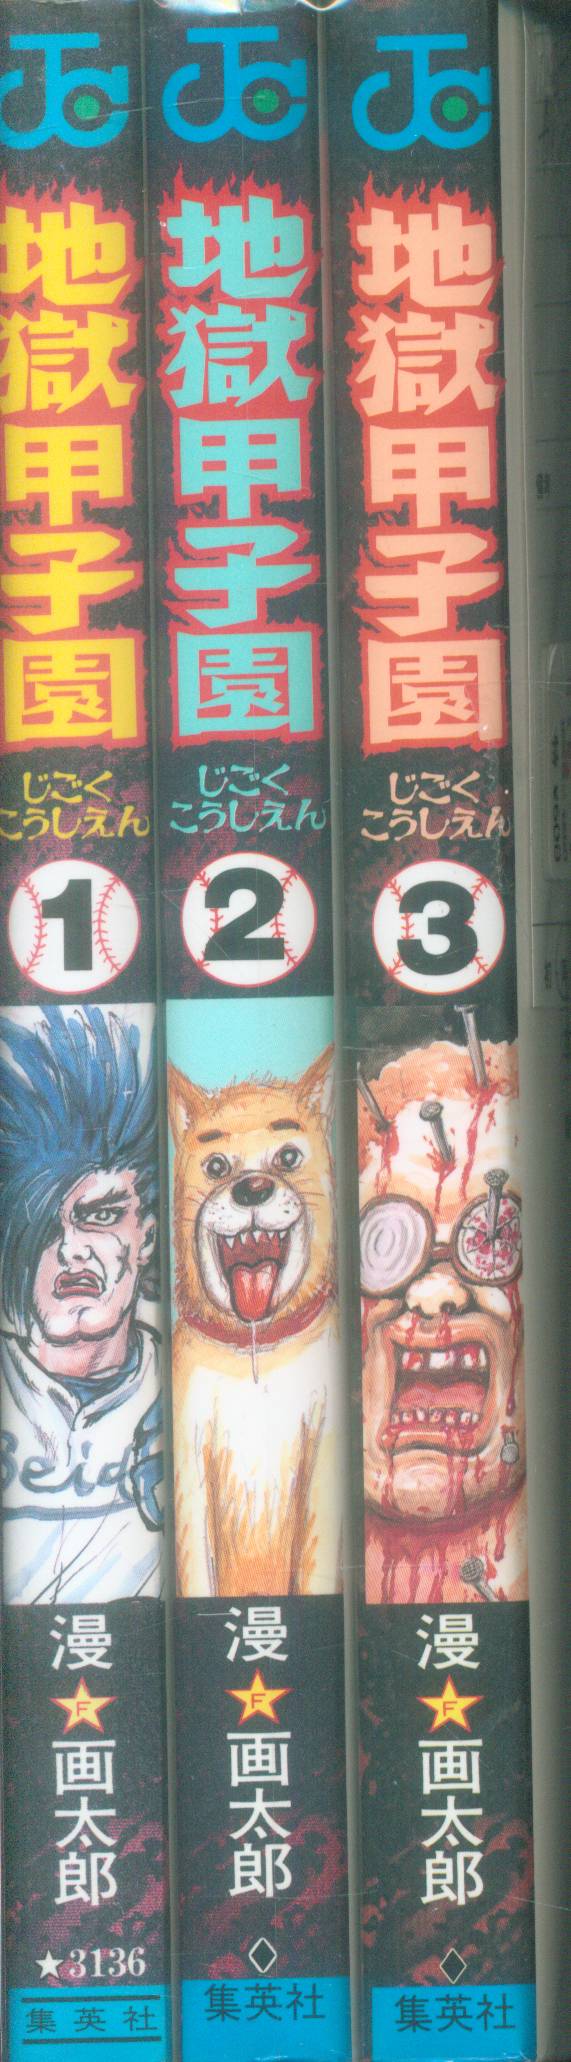 集英社 漫画太郎 地獄甲子園 全3巻 セット まんだらけ Mandarake